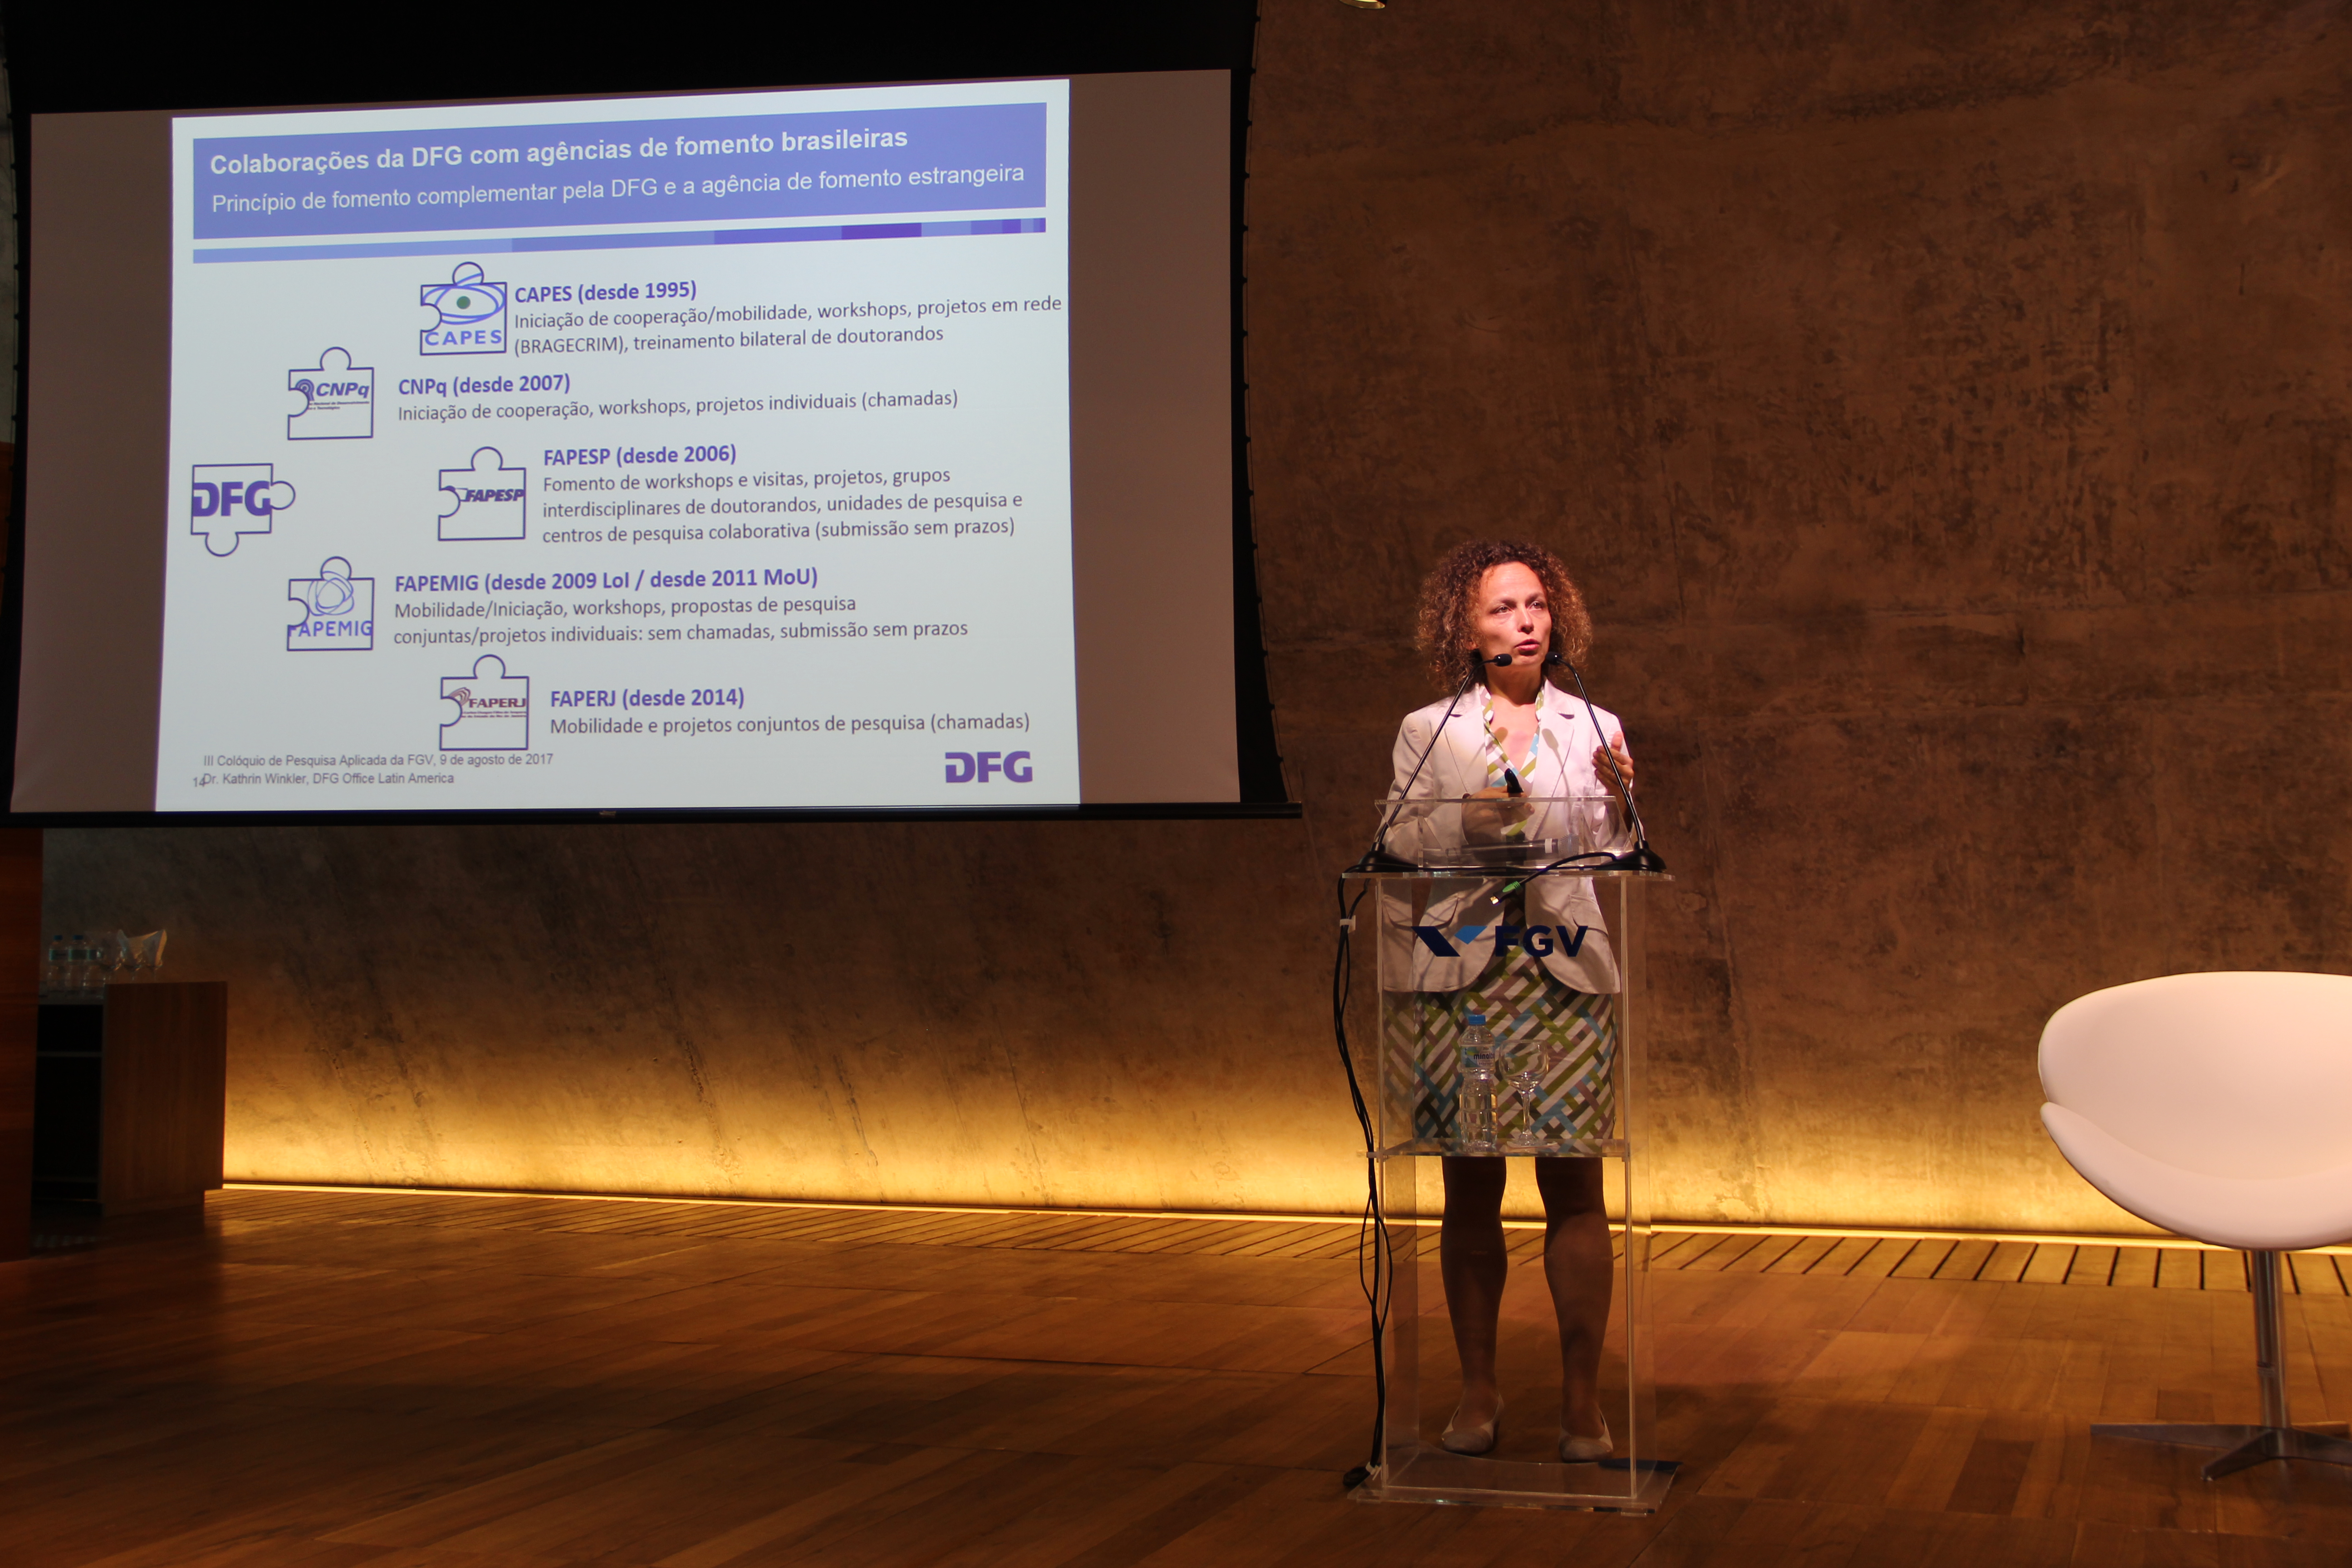 Kathrin Winkler presentó las actividades realizadas por la DFG en Brasil